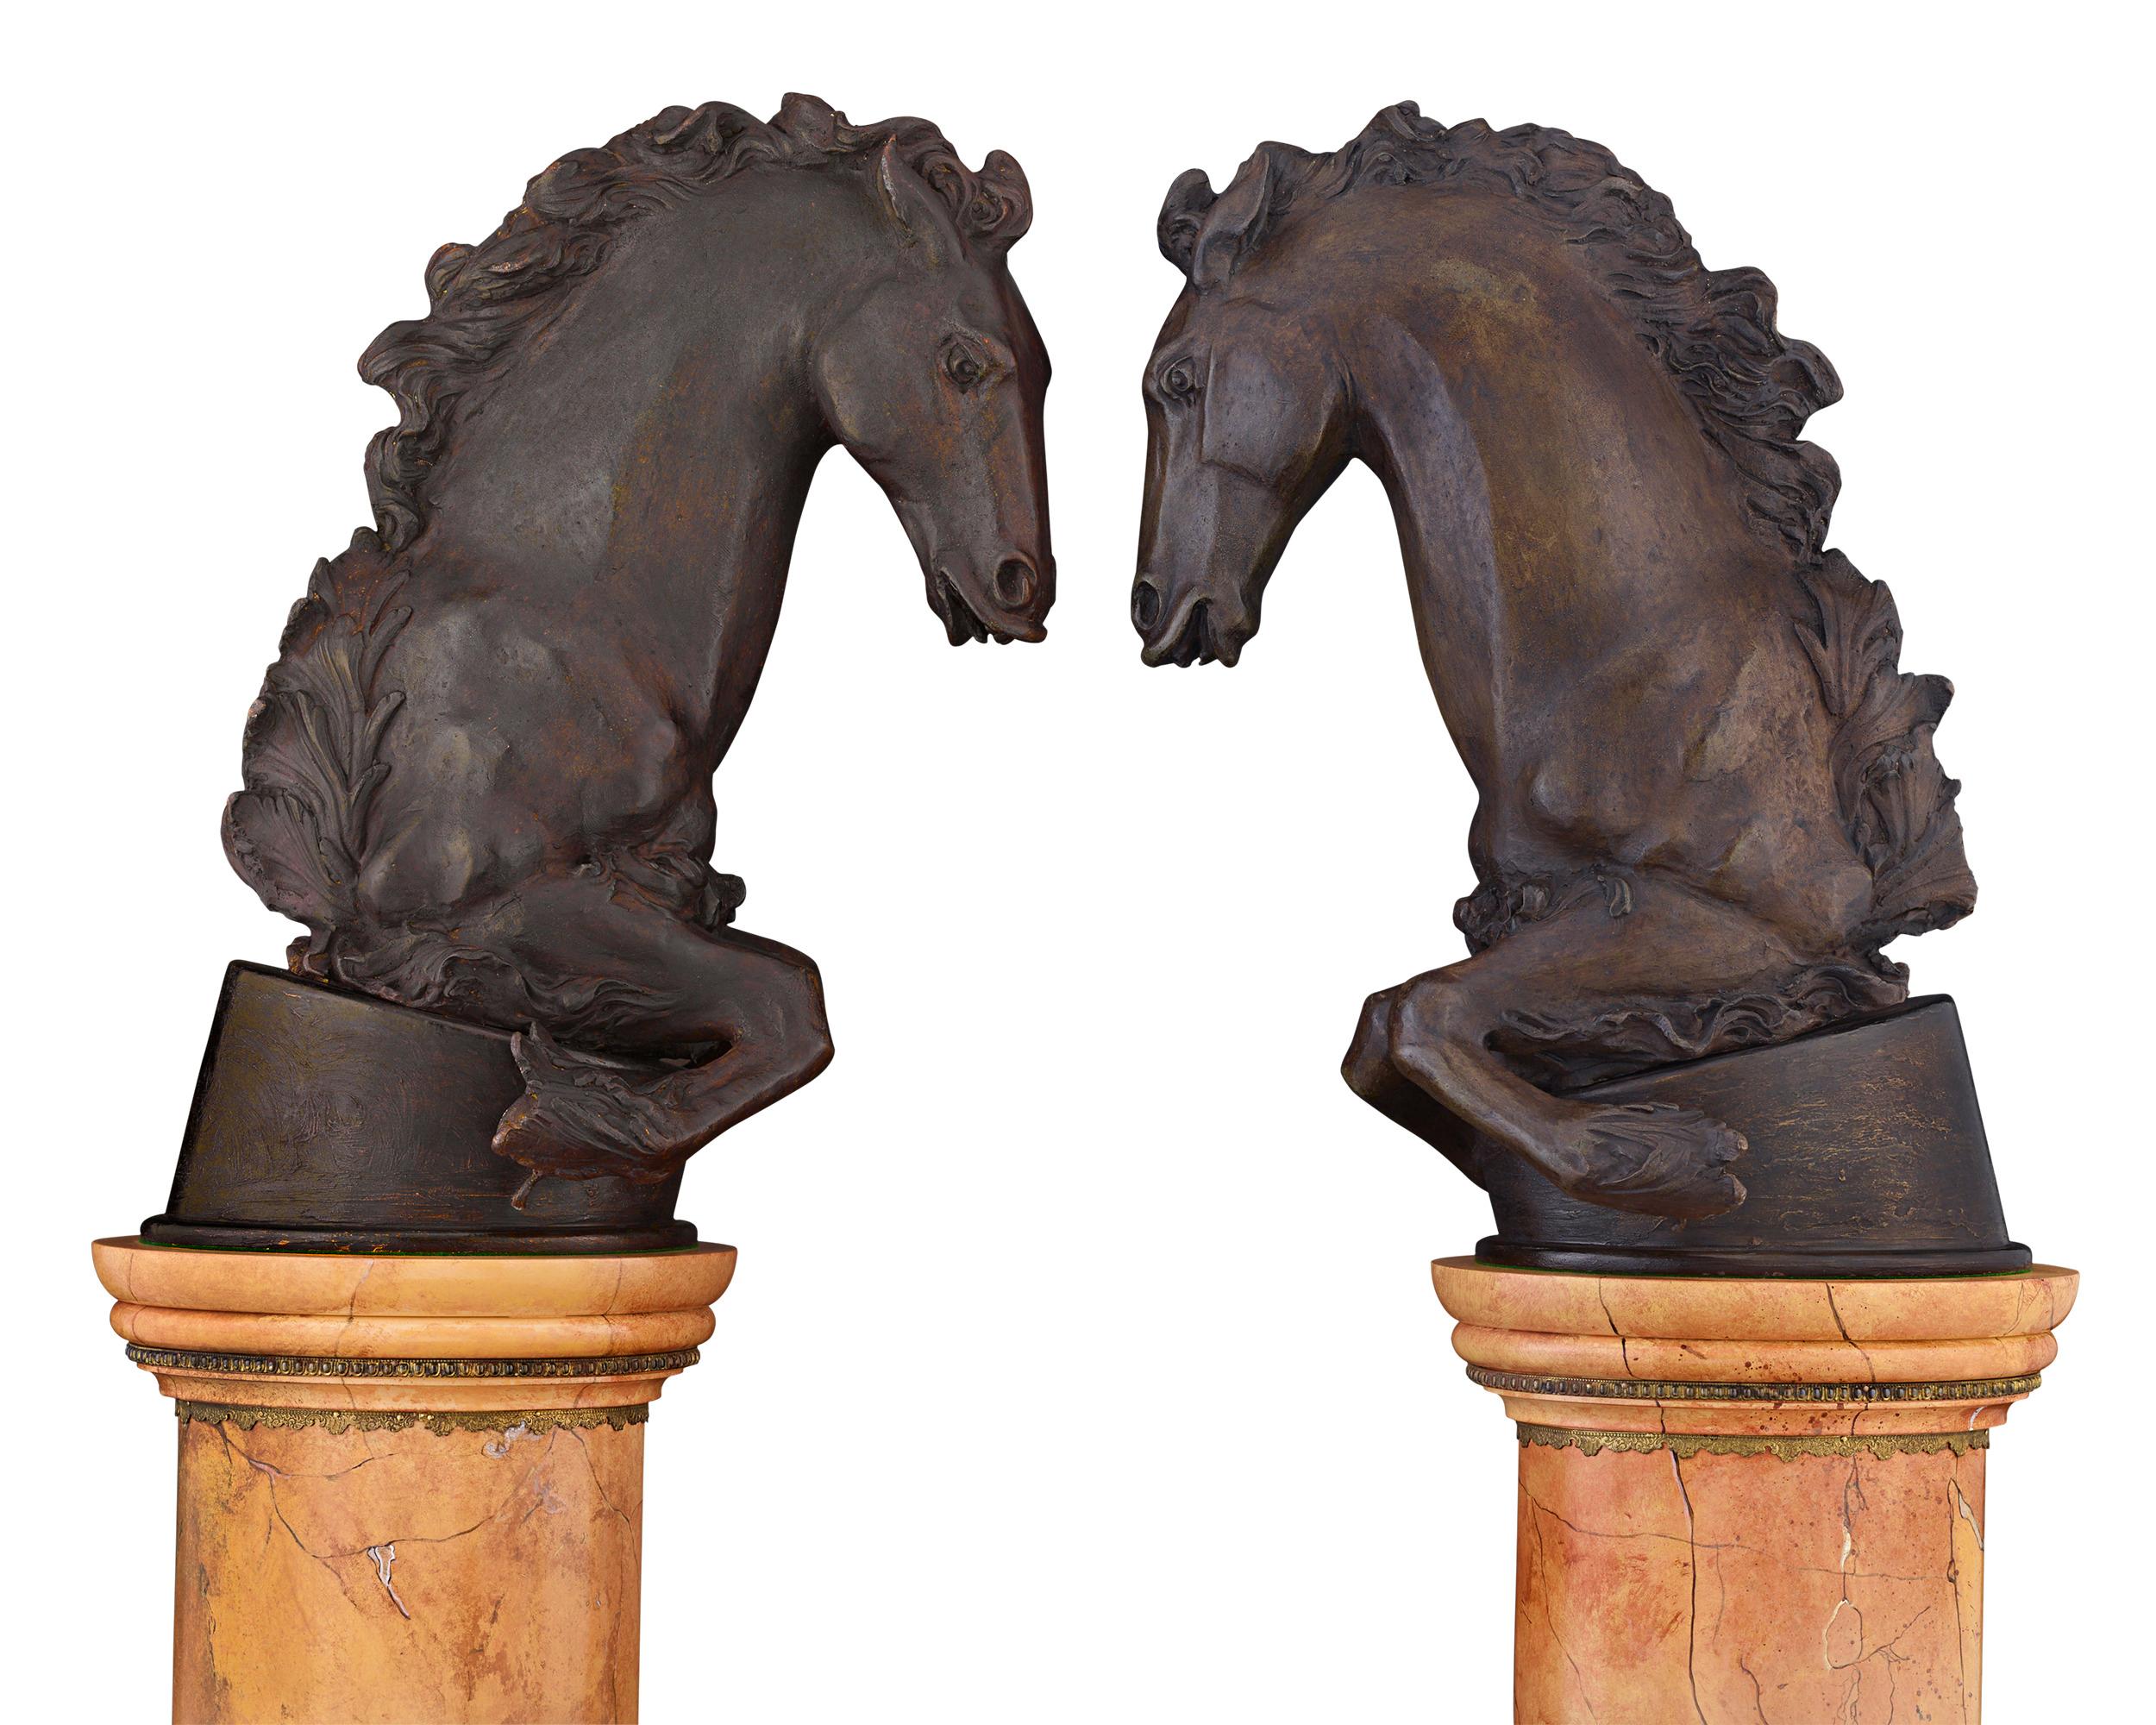 Cette paire exceptionnelle de chevaux en bronze est attribuée au sculpteur royal français Jean-Baptiste Tuby et rappelle les jardins somptueusement décorés des grands palais de Louis XIV. Famed était en fait l'un des principaux sculpteurs des